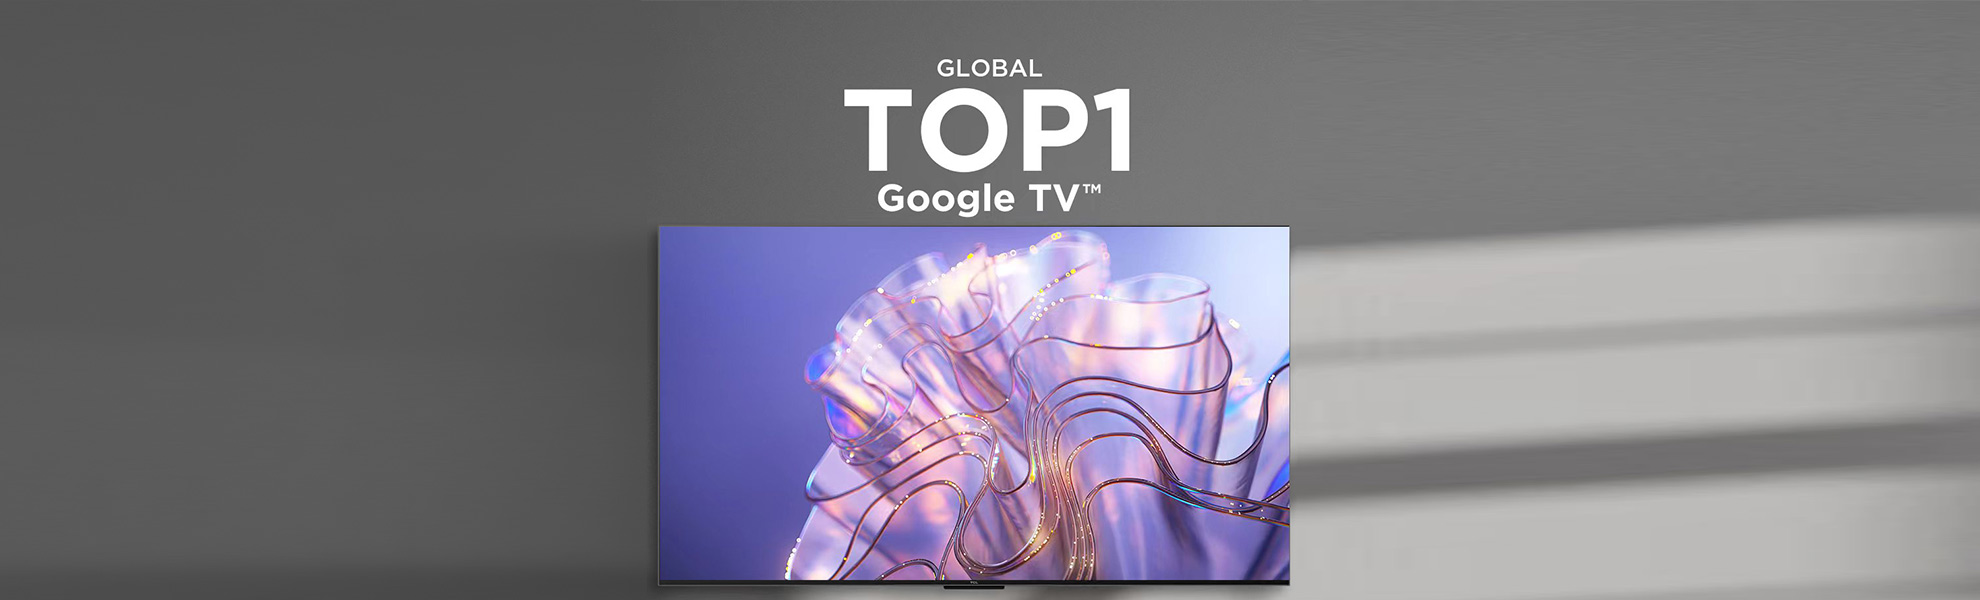 TCL پادشاه گوگل تی وی در جهان